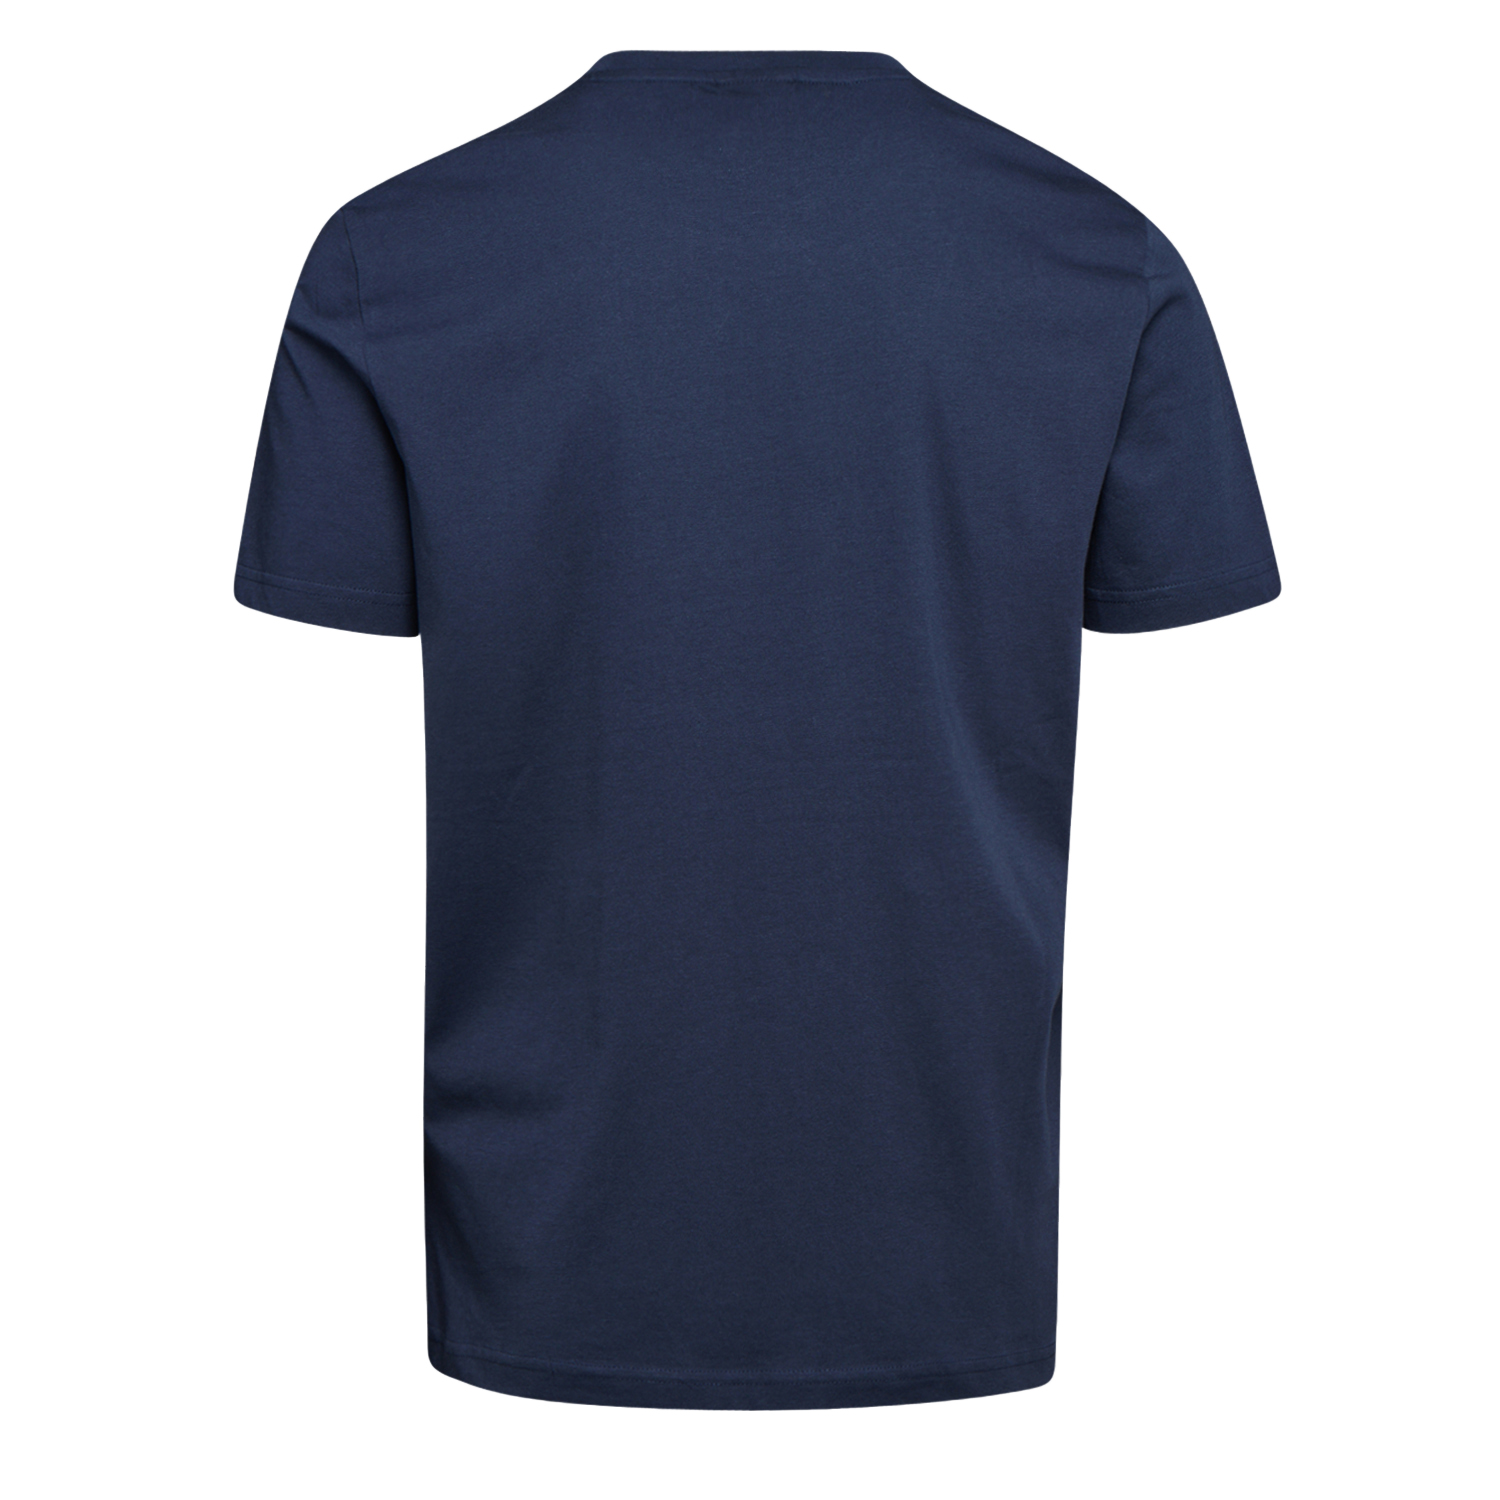 Tee-shirt de travail GRAPHIC ORGANIC à manches courtes bleu marine TS - DIADORA SPA - 702.176914